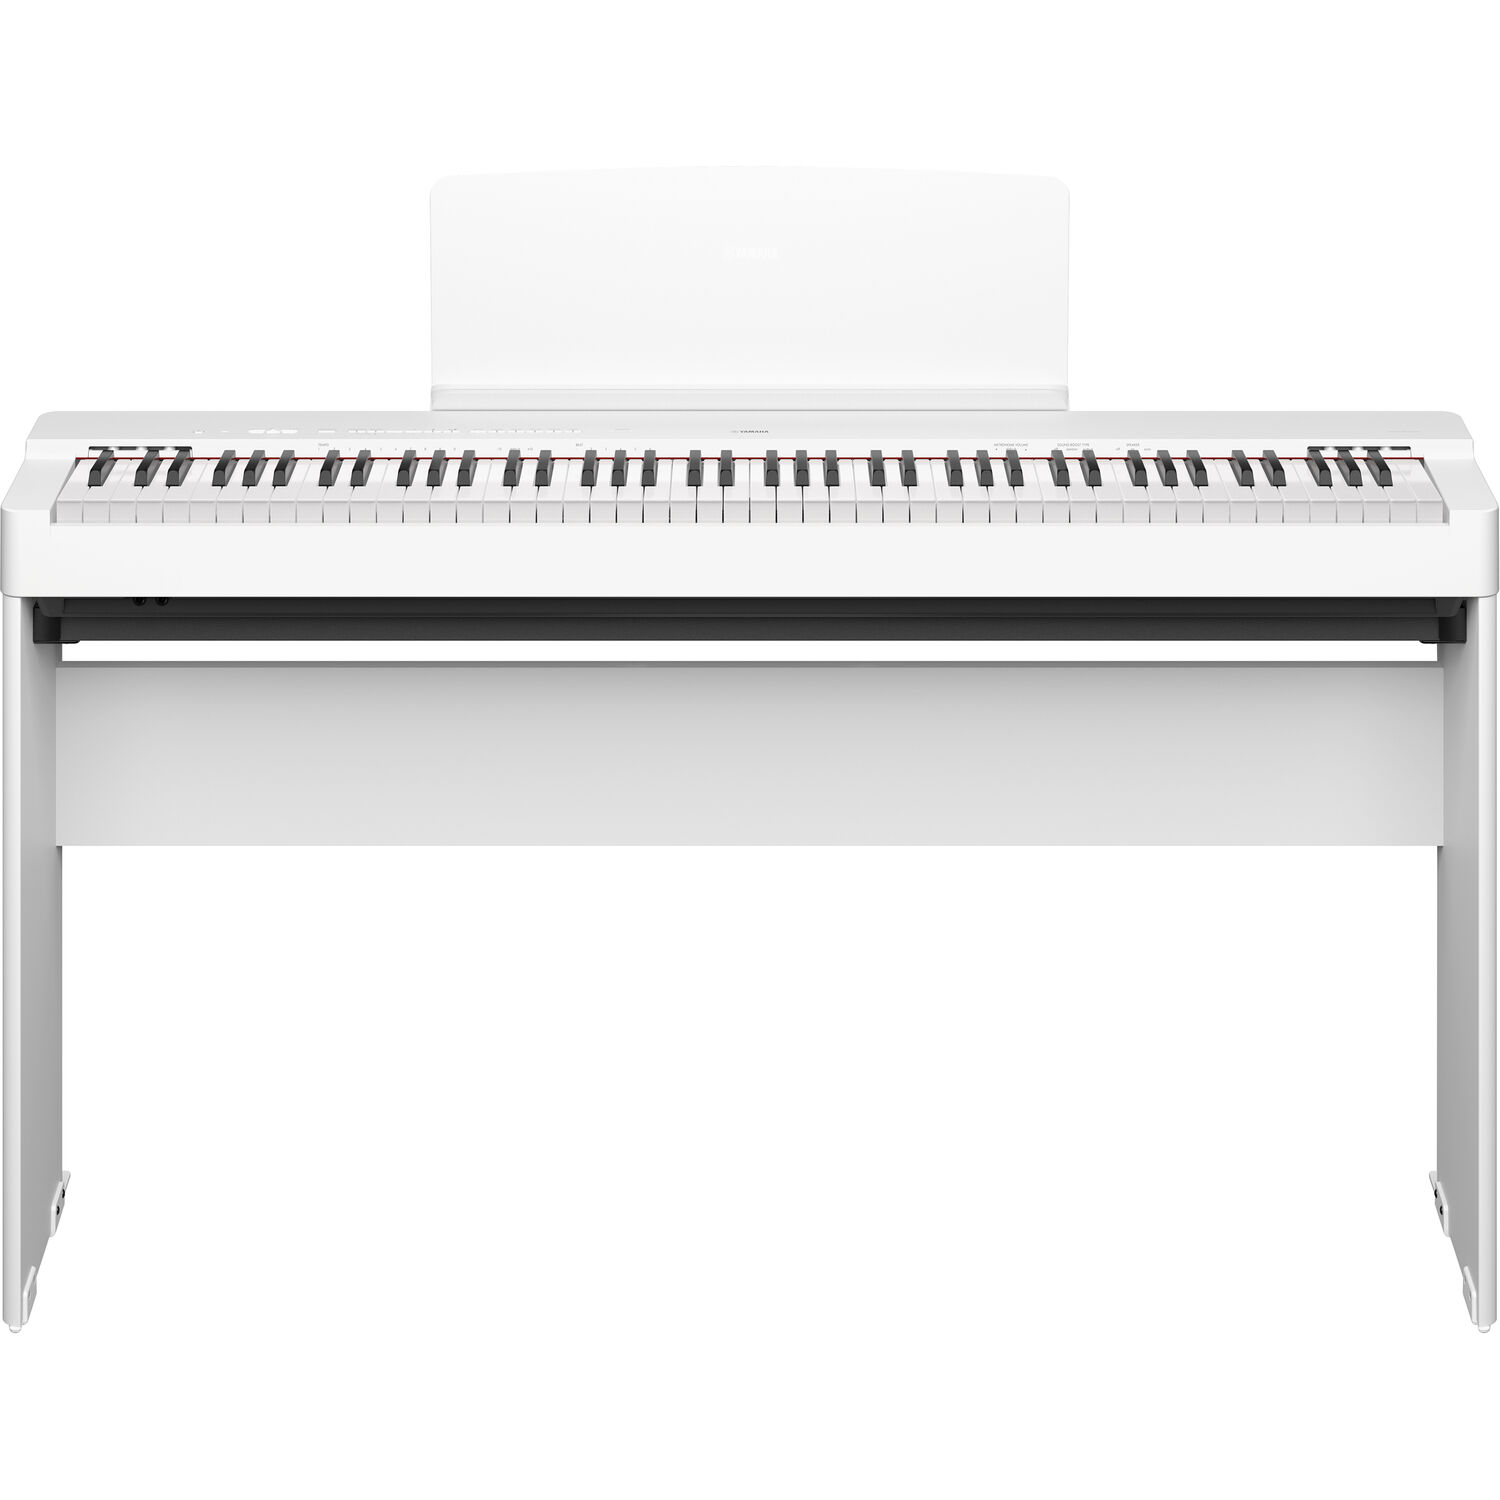 Подставка для цифрового пианино Yamaha L-200WH